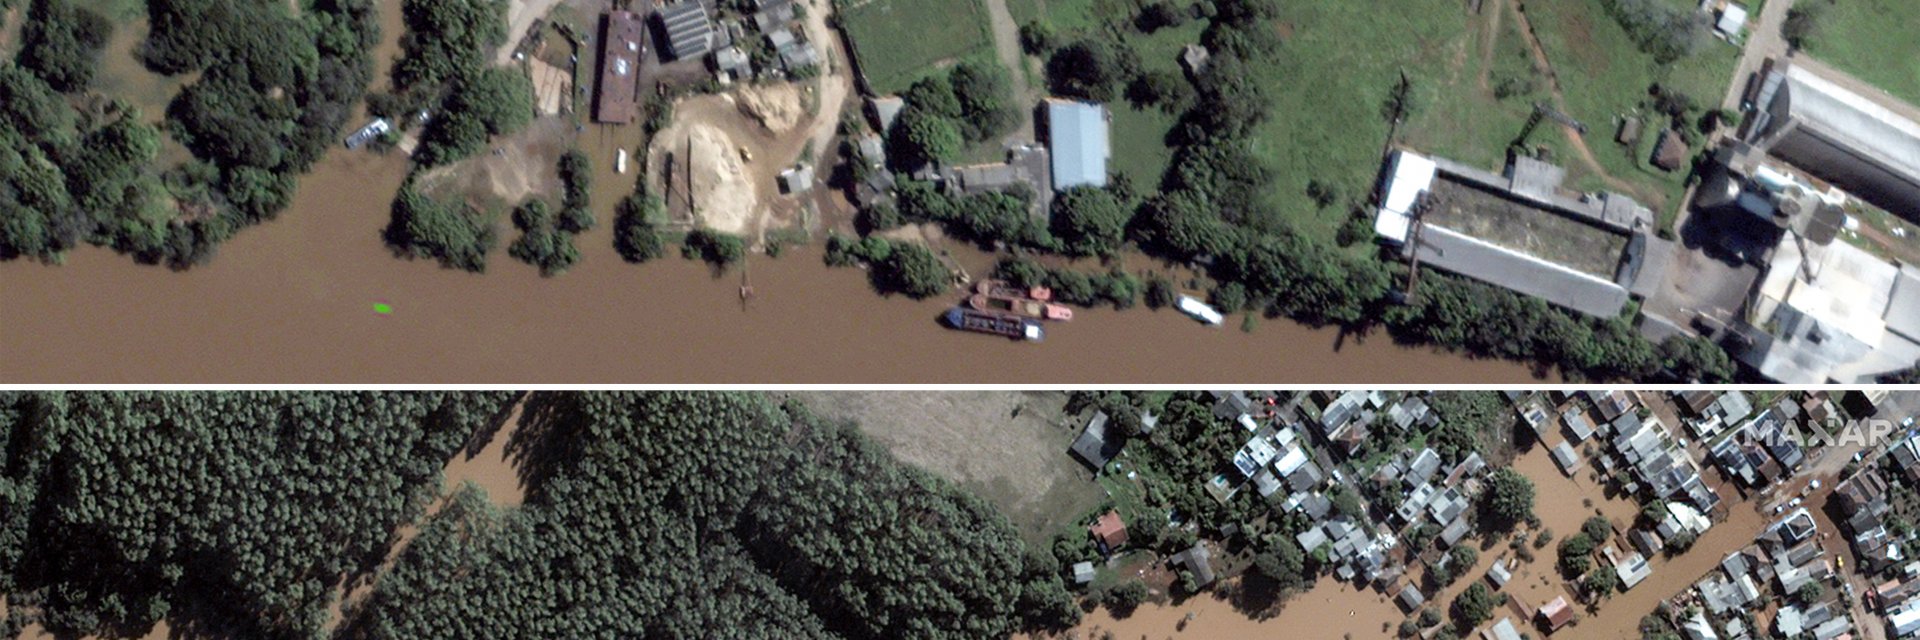 Потопът в Бразилия взе десетки жертви, в Порто Алегре бедстват без храна и ток (снимки)